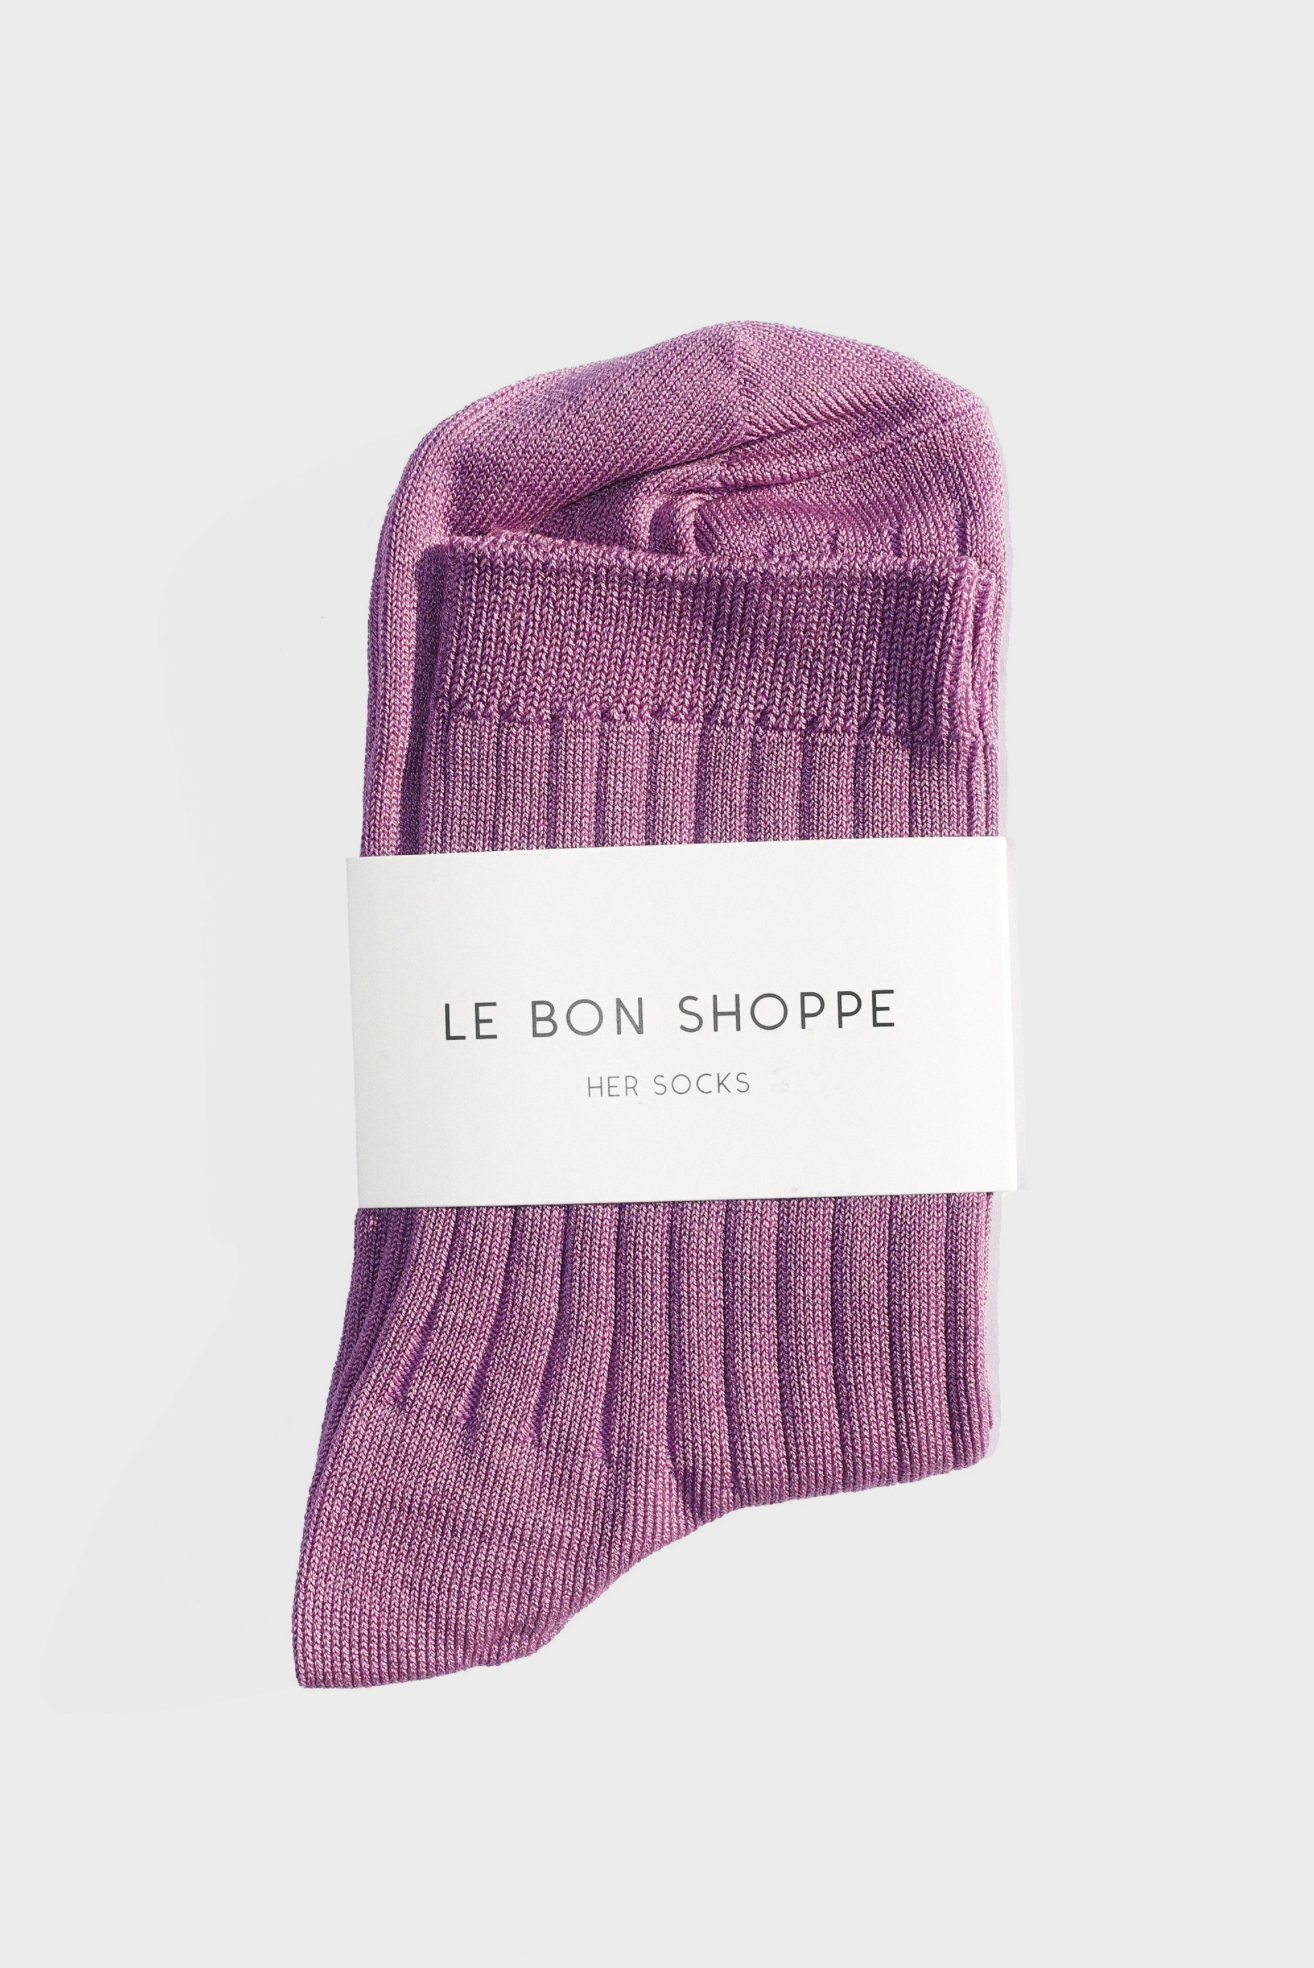 Her Socks in Orchid by Le Bon Shoppe http://www.shoprecital.com